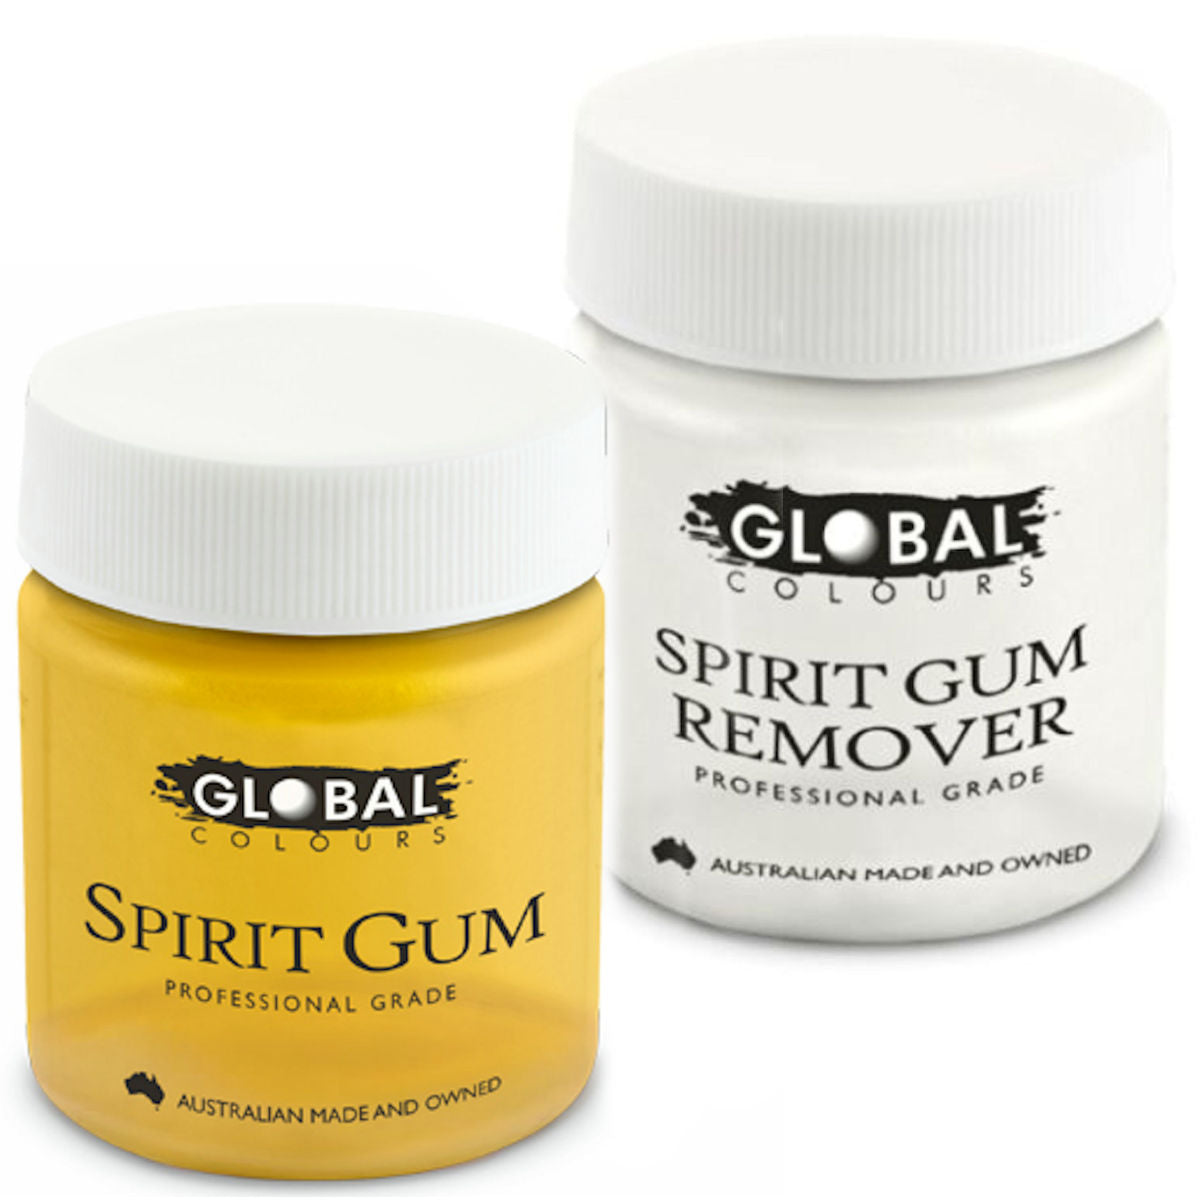 Spirit Gum and Remover